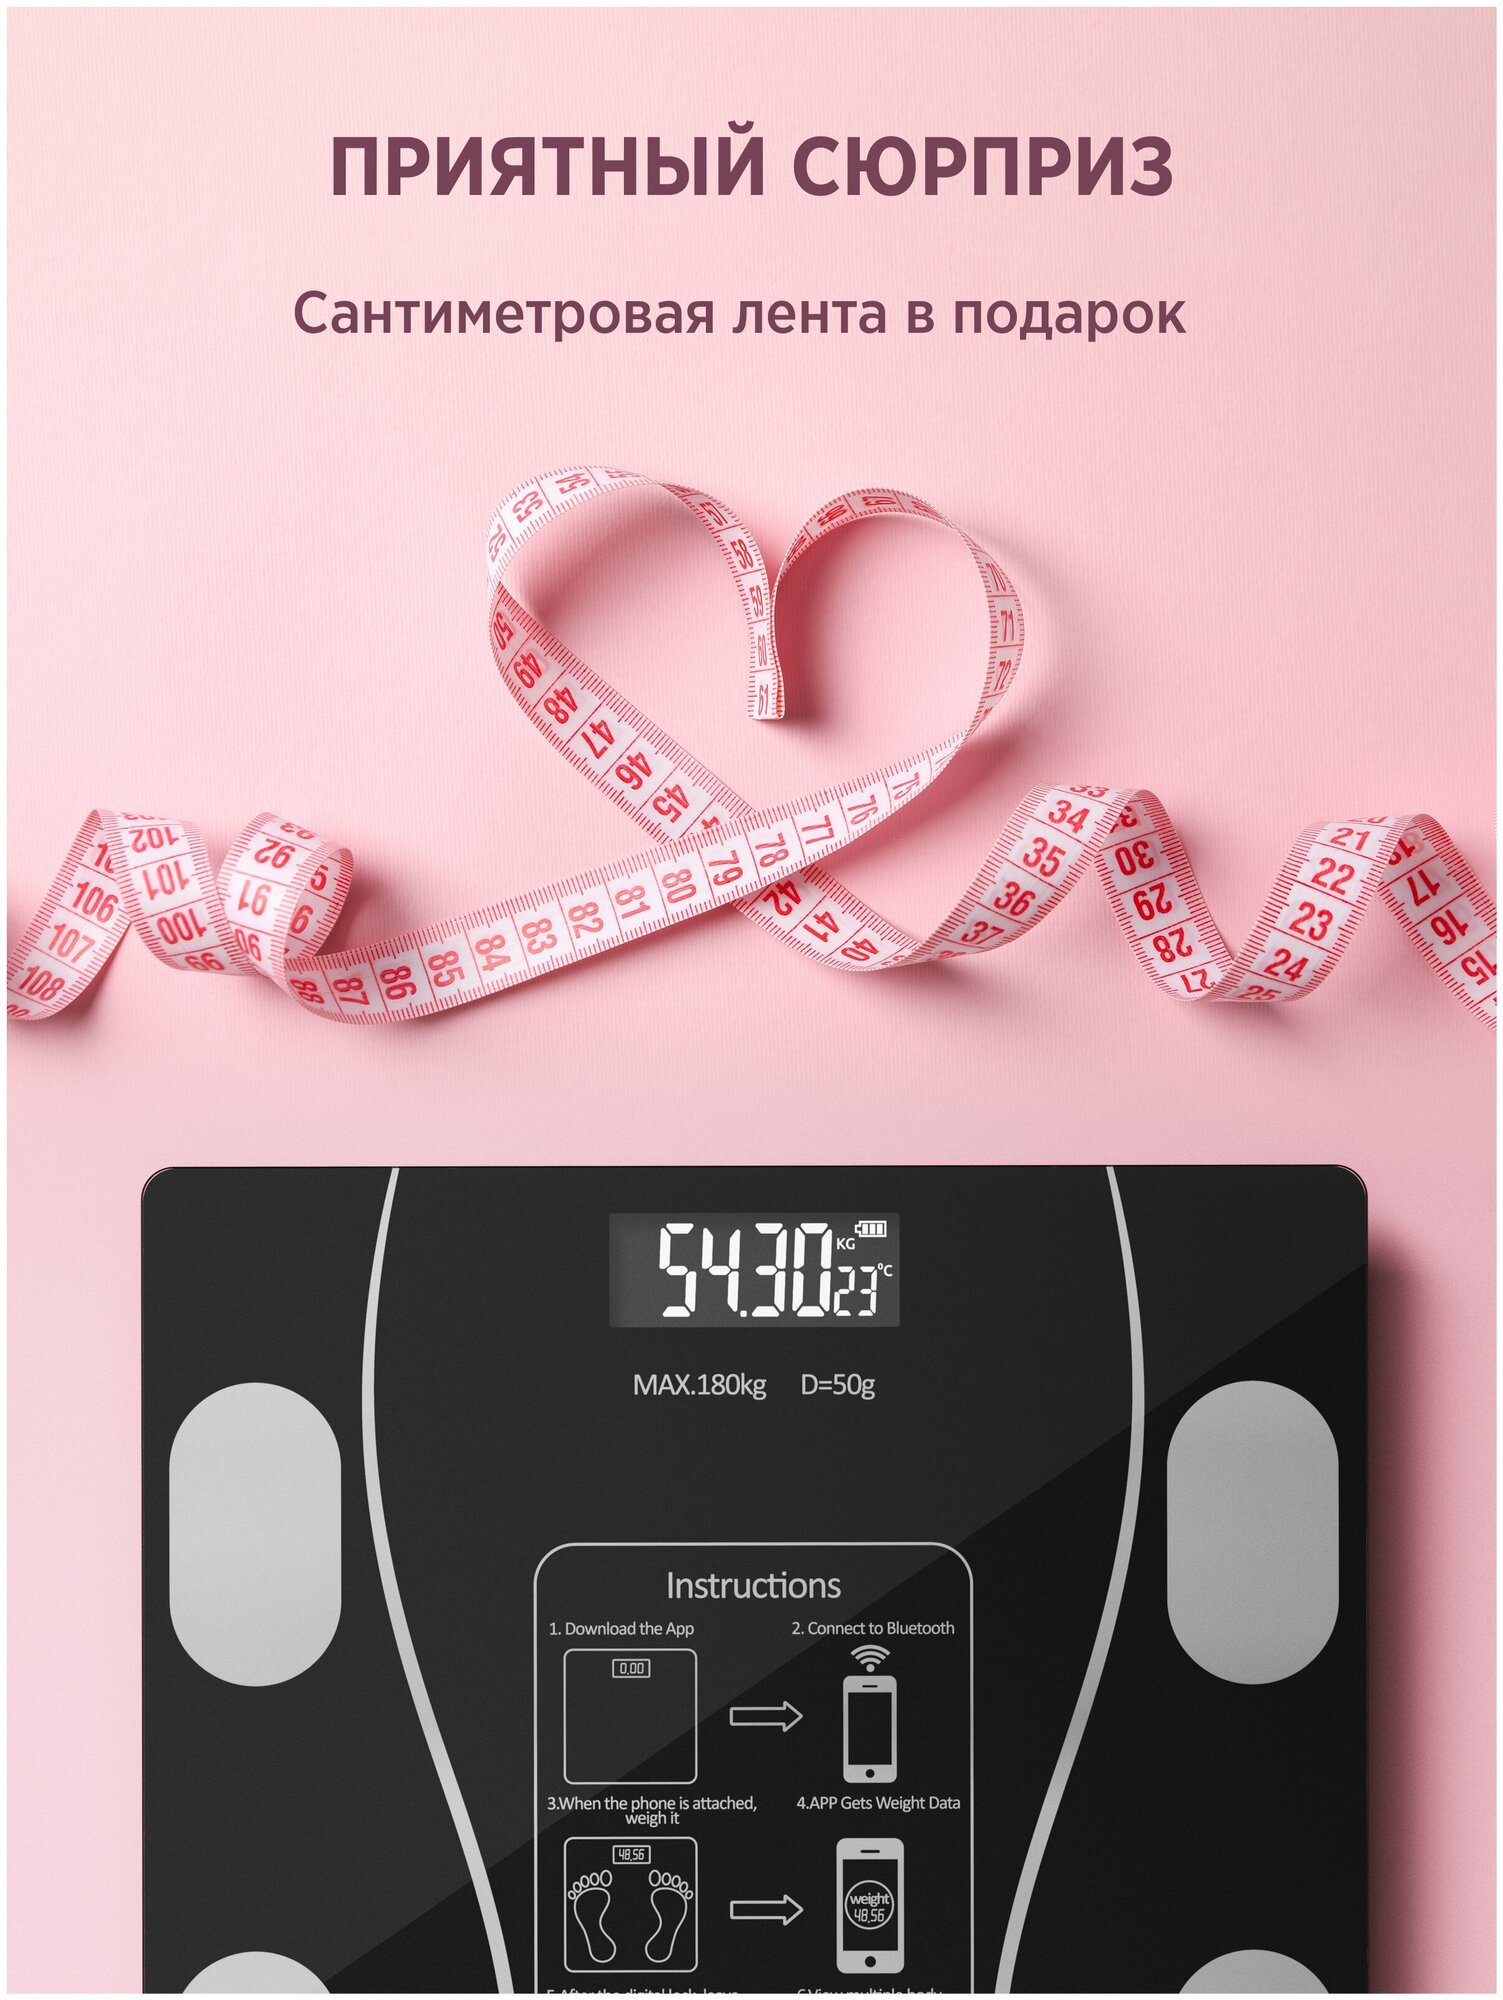 Напольные умные весы Evo beauty c bmi и работой от аккумулятора, электронные напольные весы для Xiaomi, iPhone, Android, черные - фотография № 11